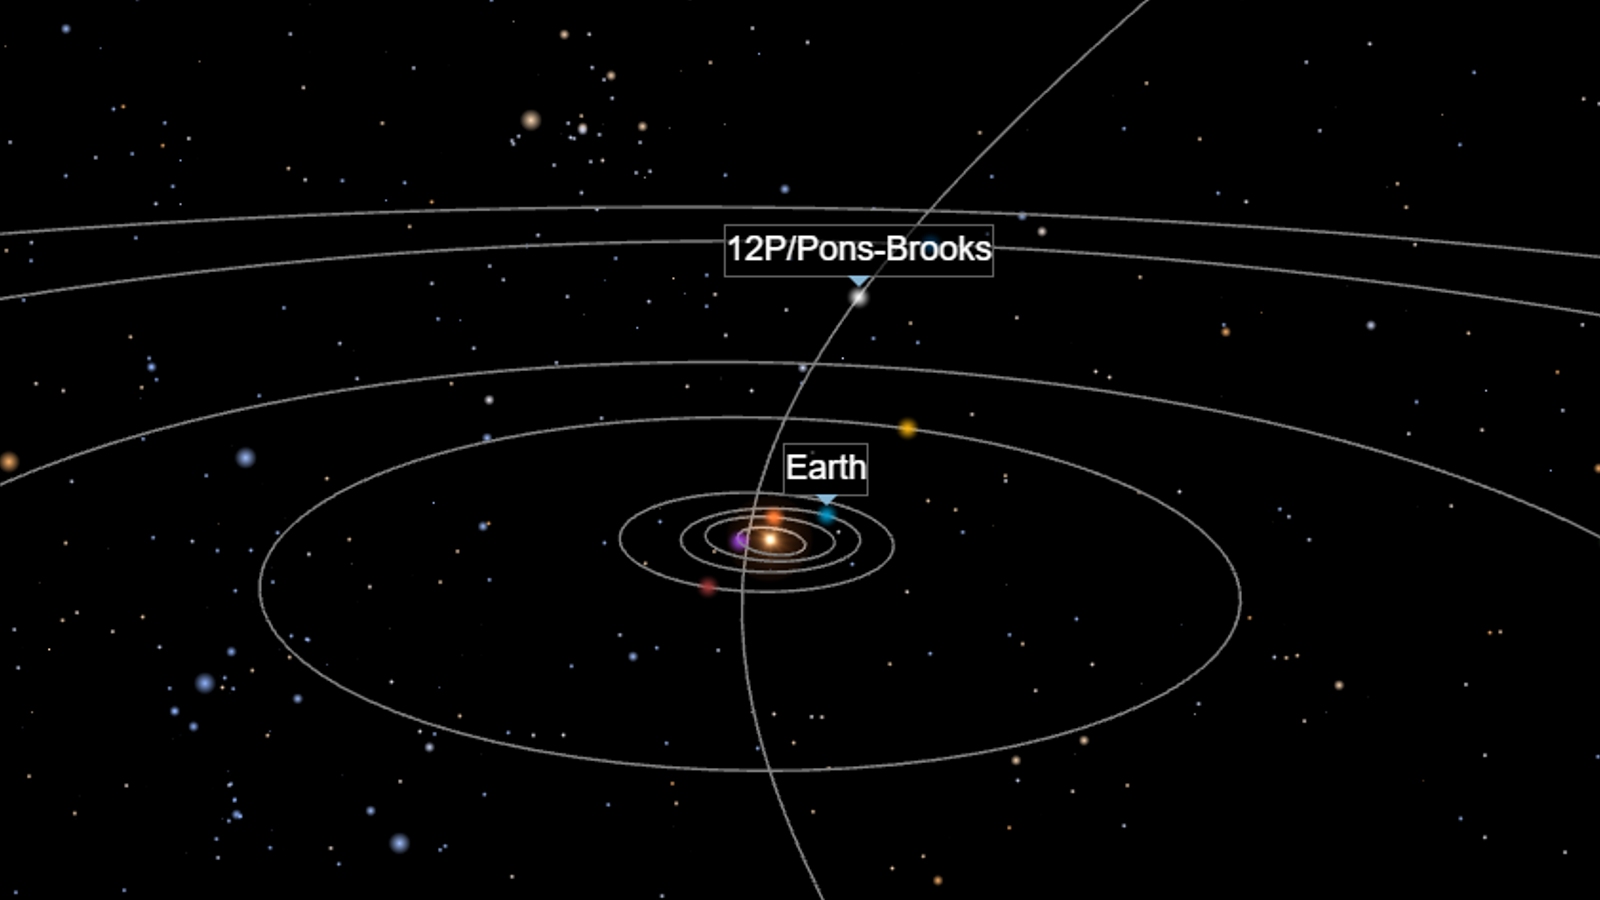 Комета понса брукса краснодар. Комета 12p Pons-Brooks. Размеры комет. Комета Понса Брукса. Комета Pons-Brooks Orbit.